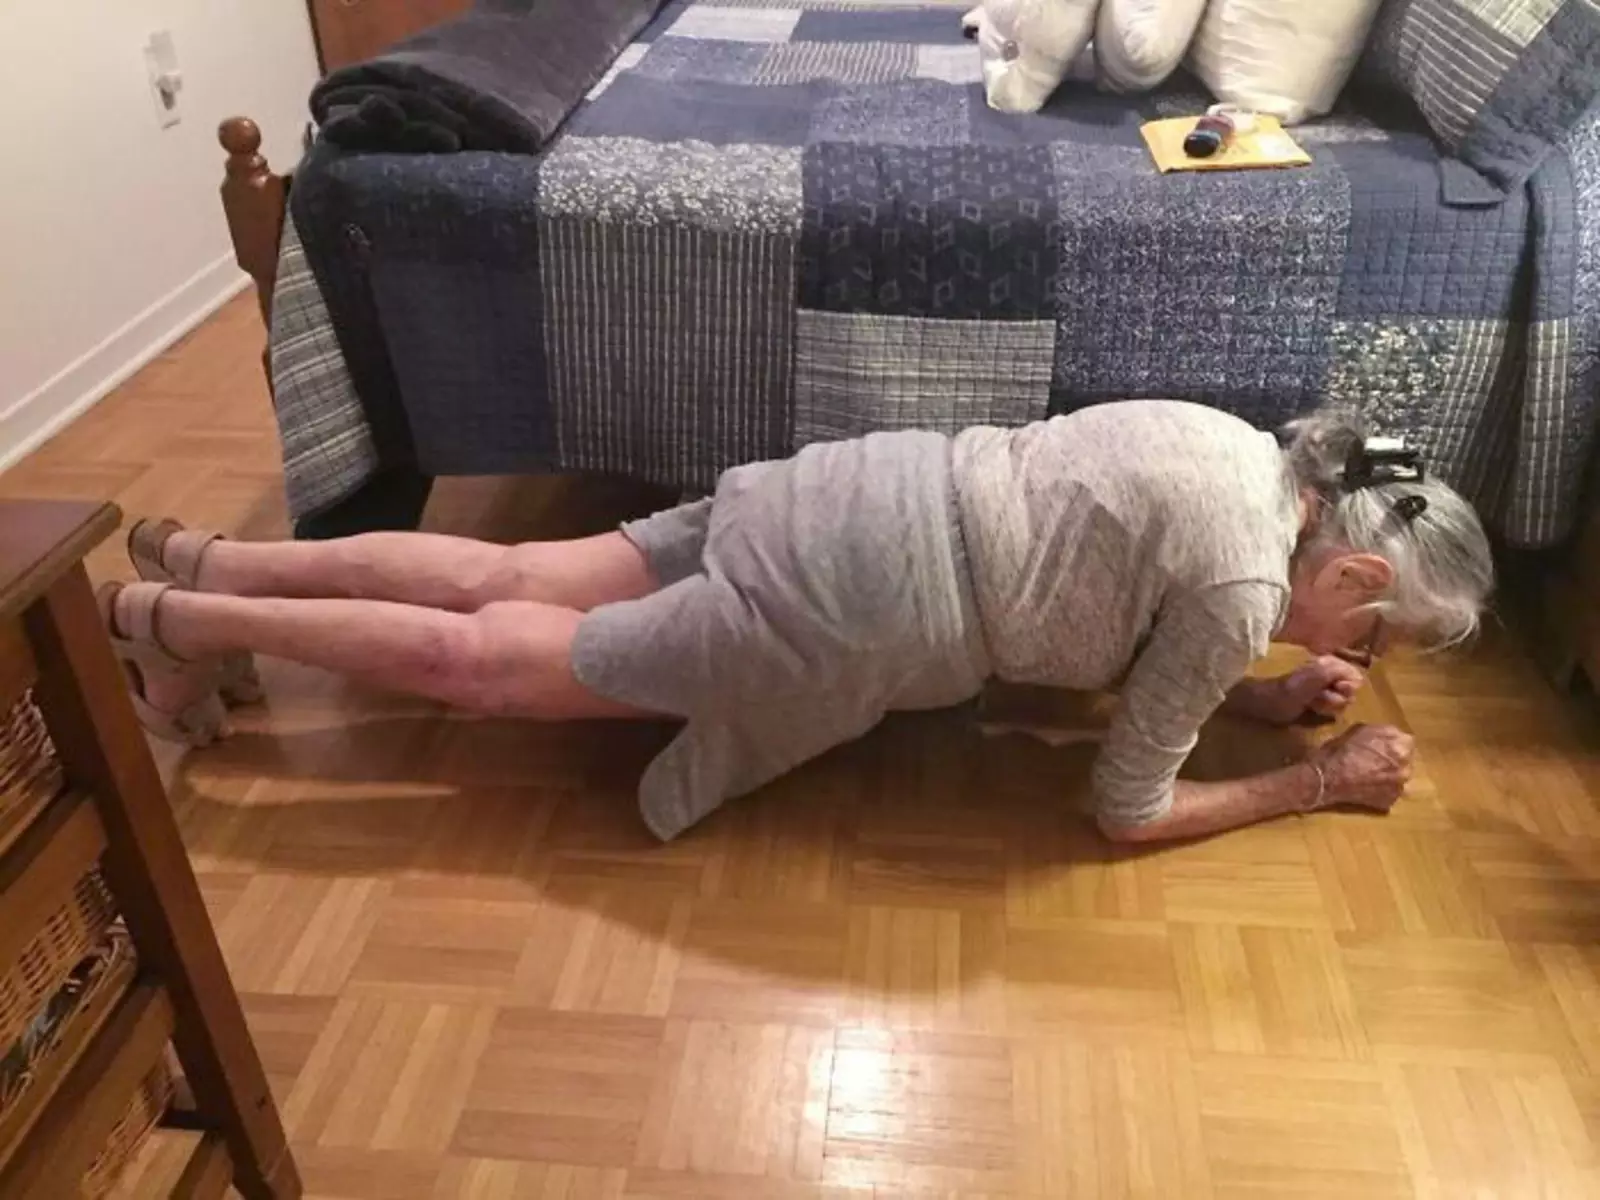 "Моей бабушке исполнилось 100 лет в октябре прошлого года, это она делает планку в течение 30 секунд".